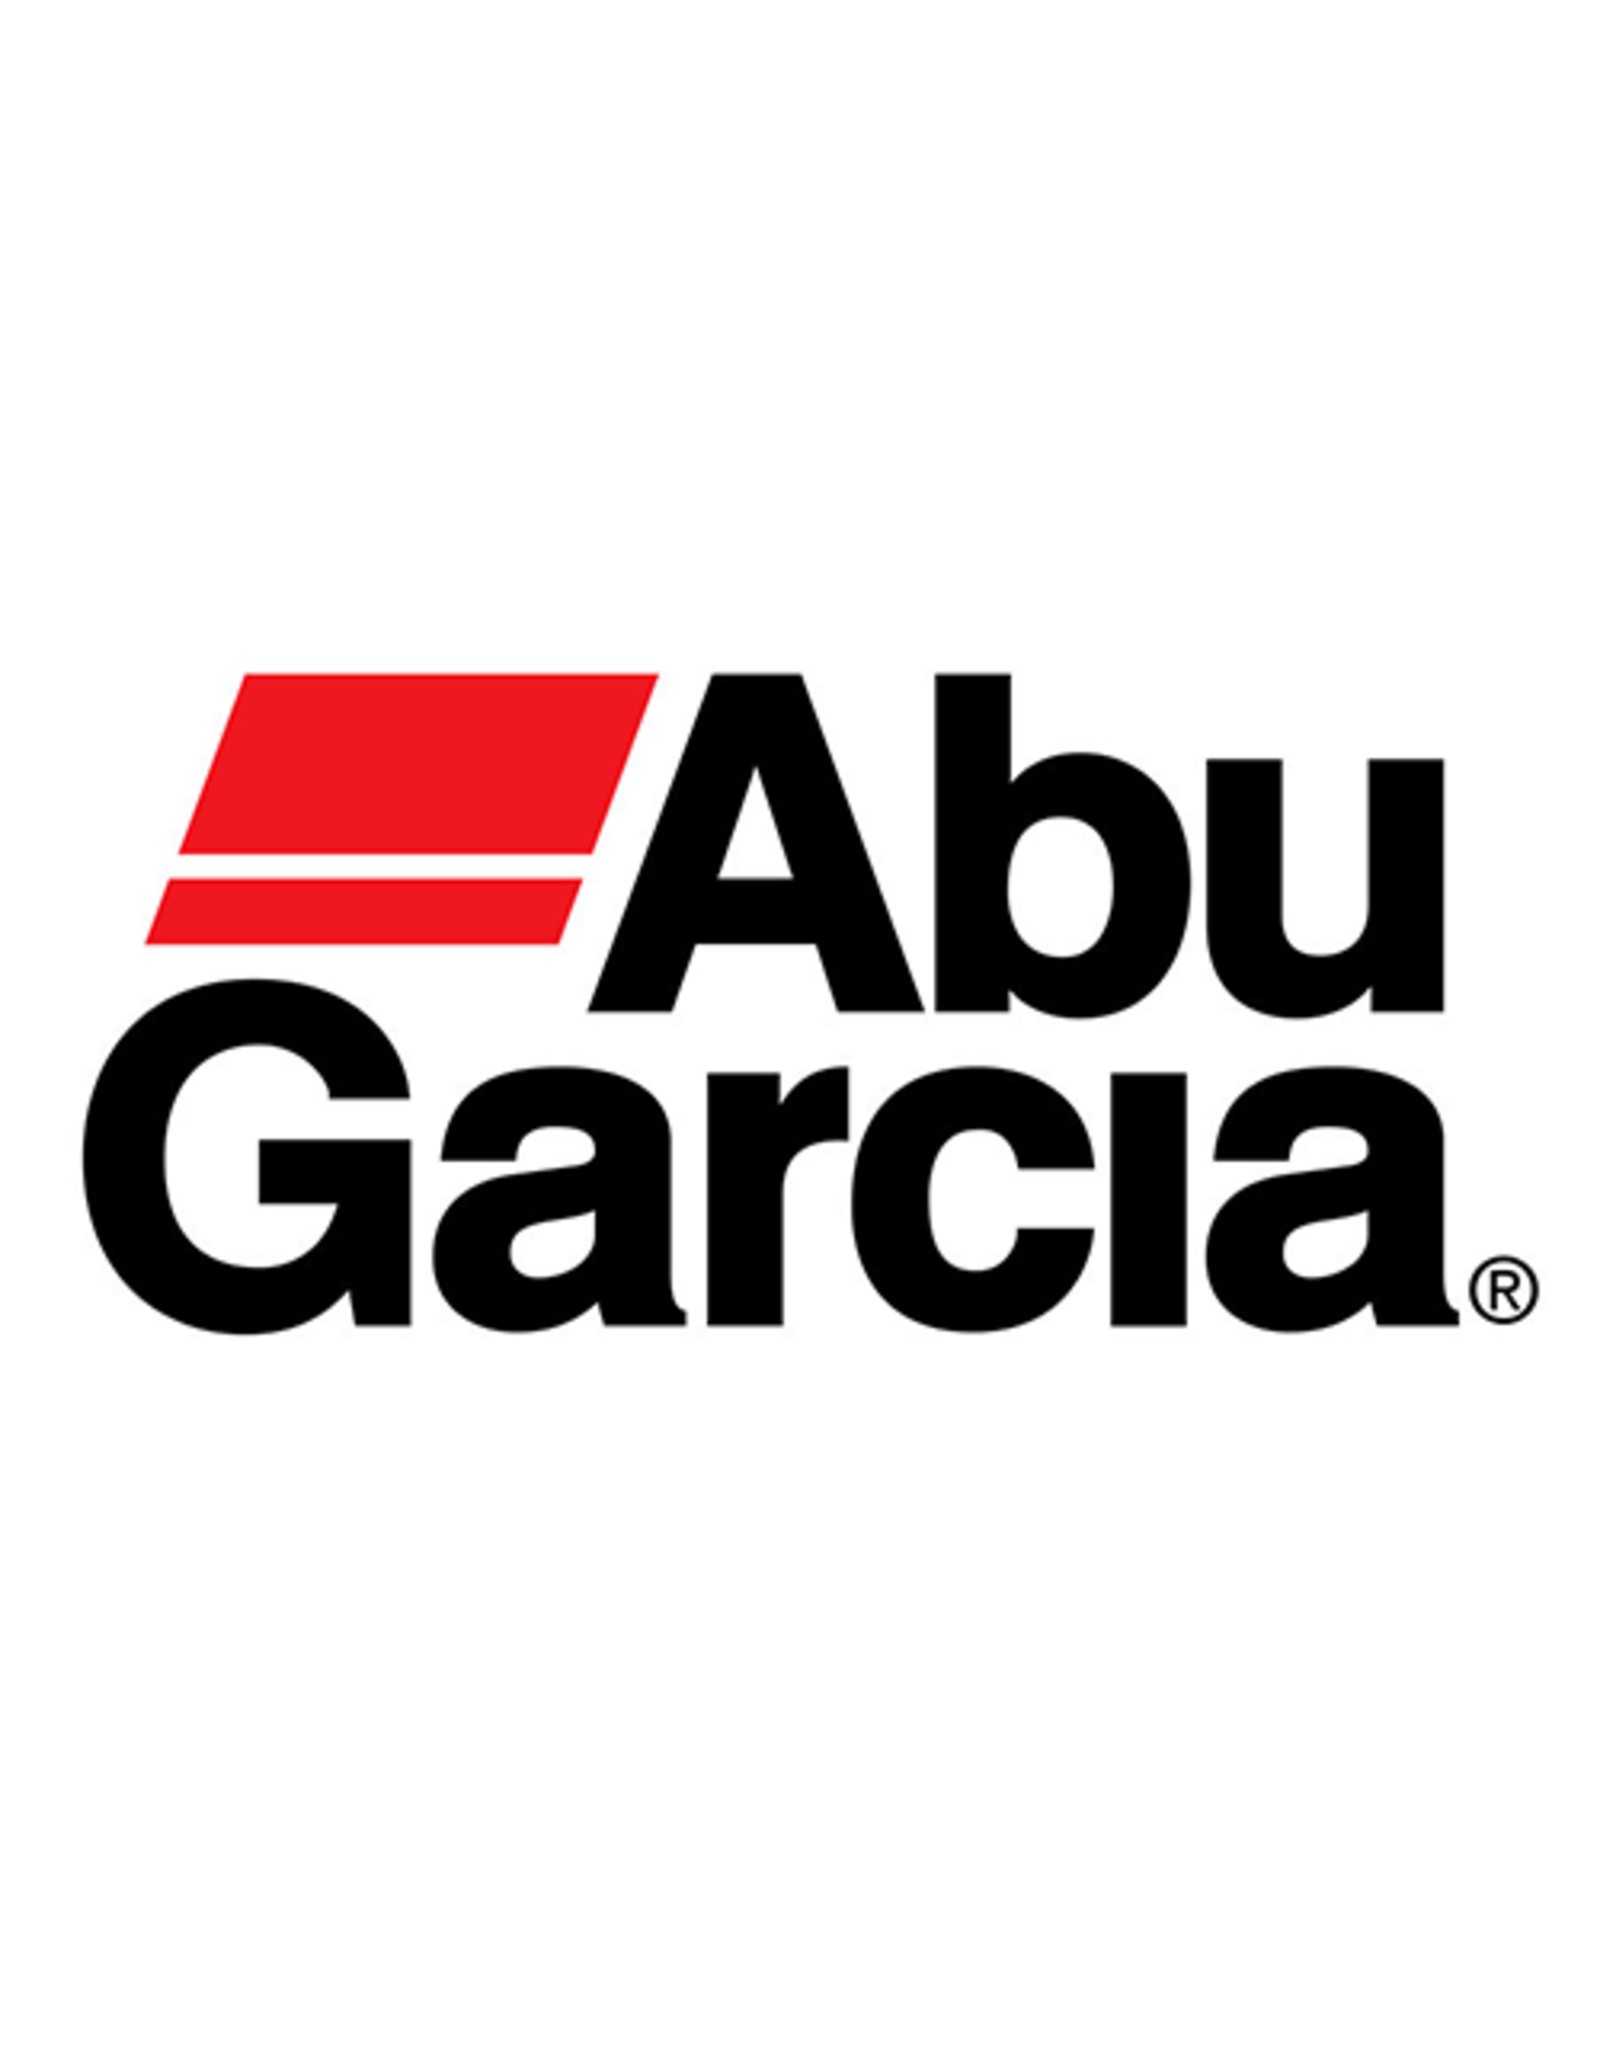 Abu Garcia 6989  BRAKE BLOCK